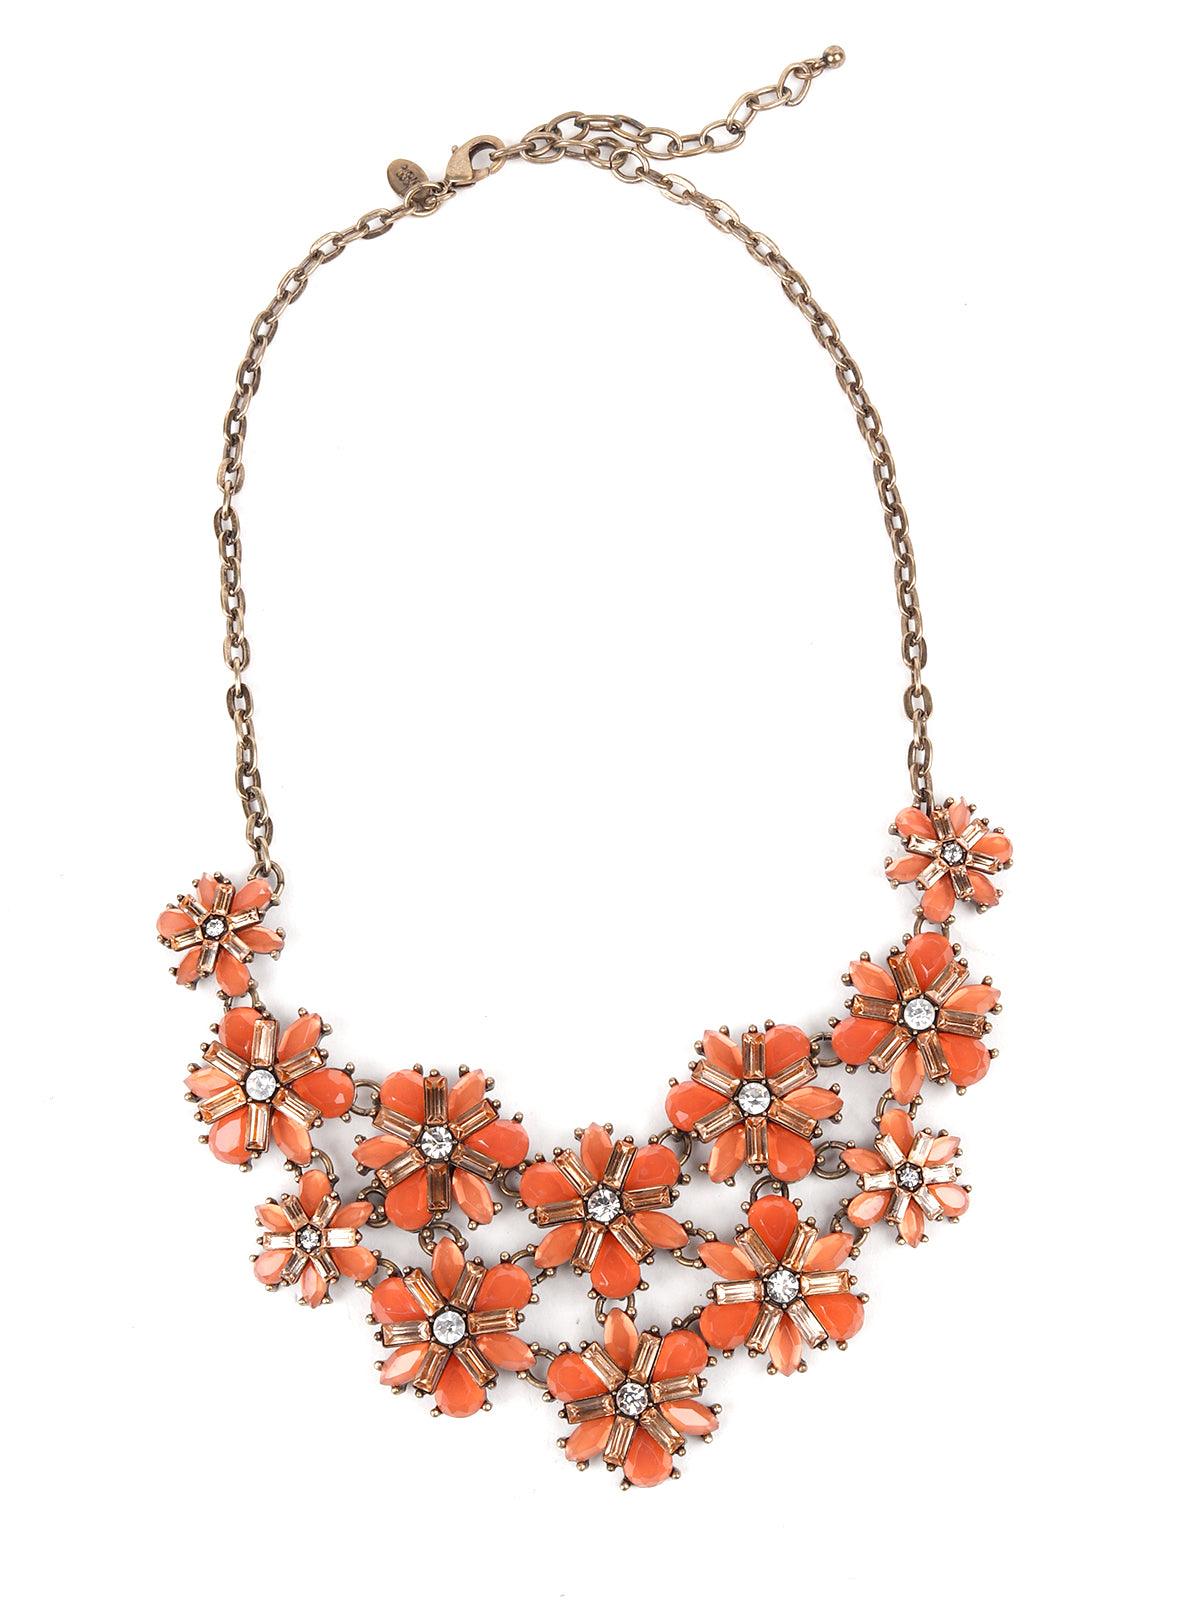 Floral Studded Orange Necklace - Odette